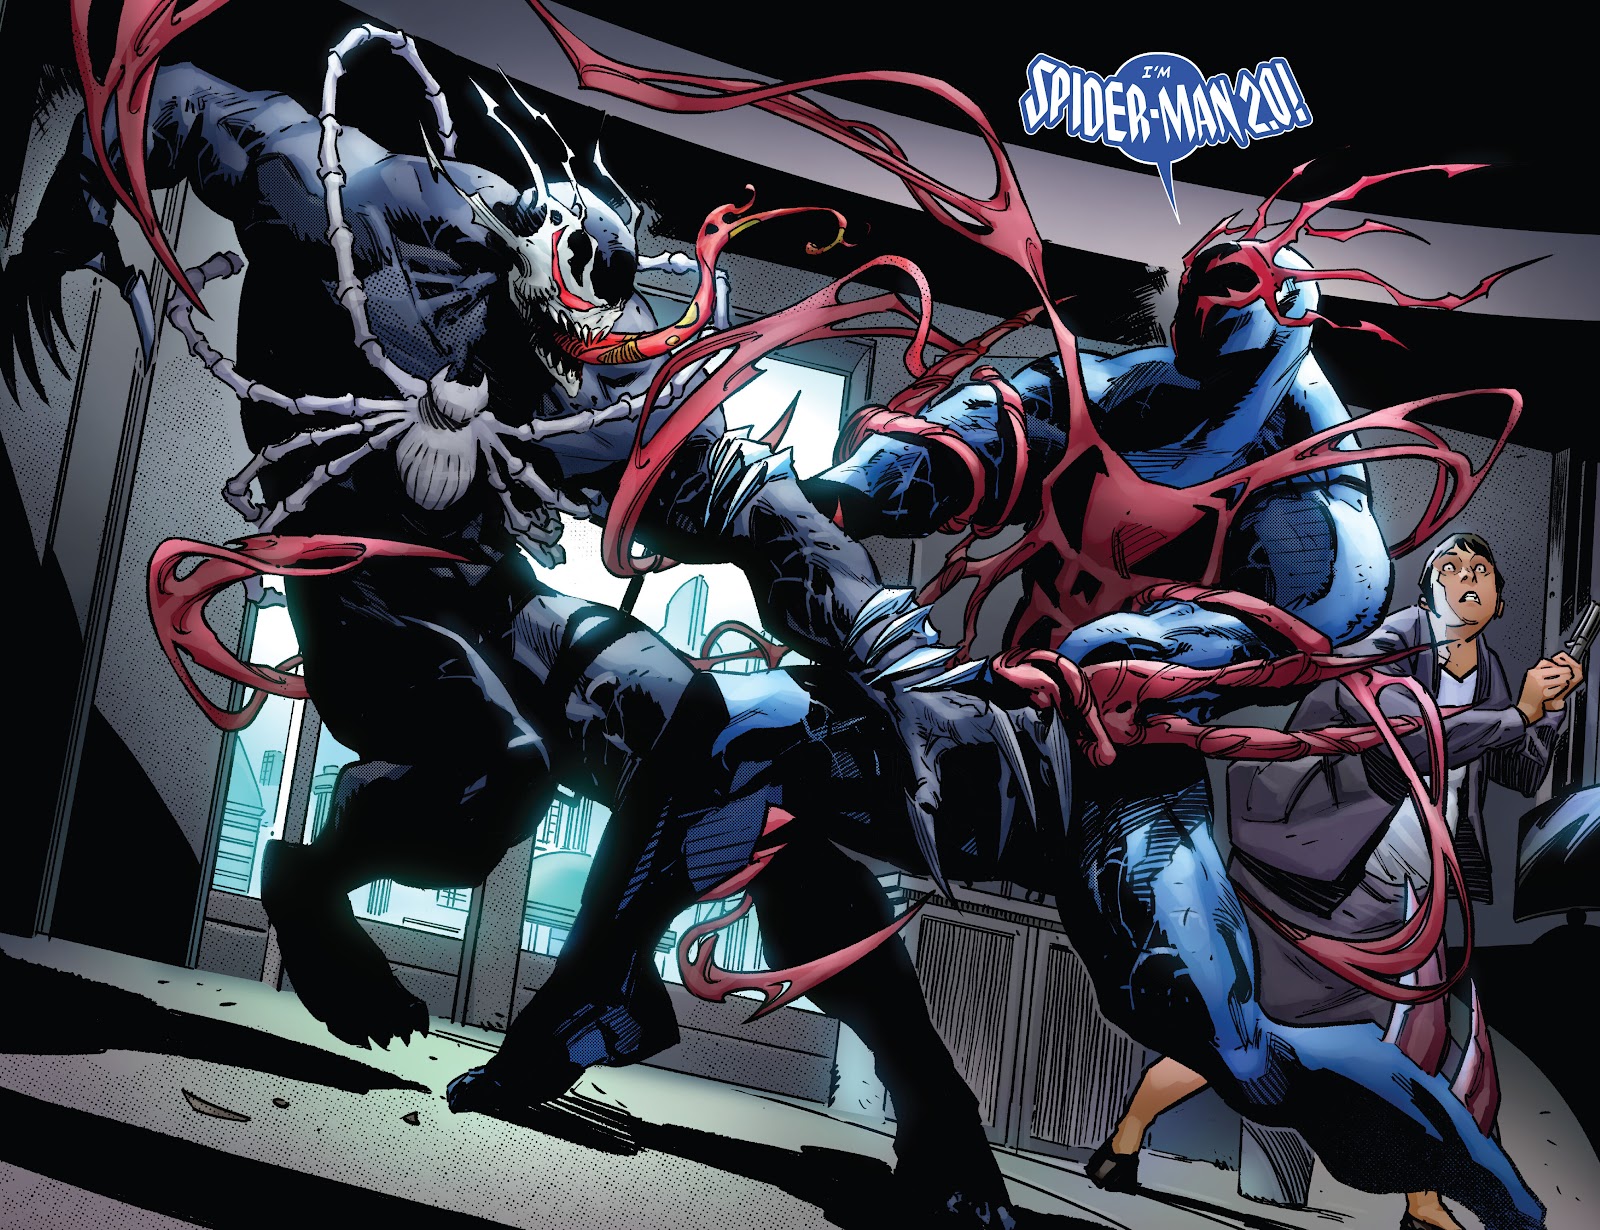 Symbiote Spider-Man 2099 issue 2 - Page 19